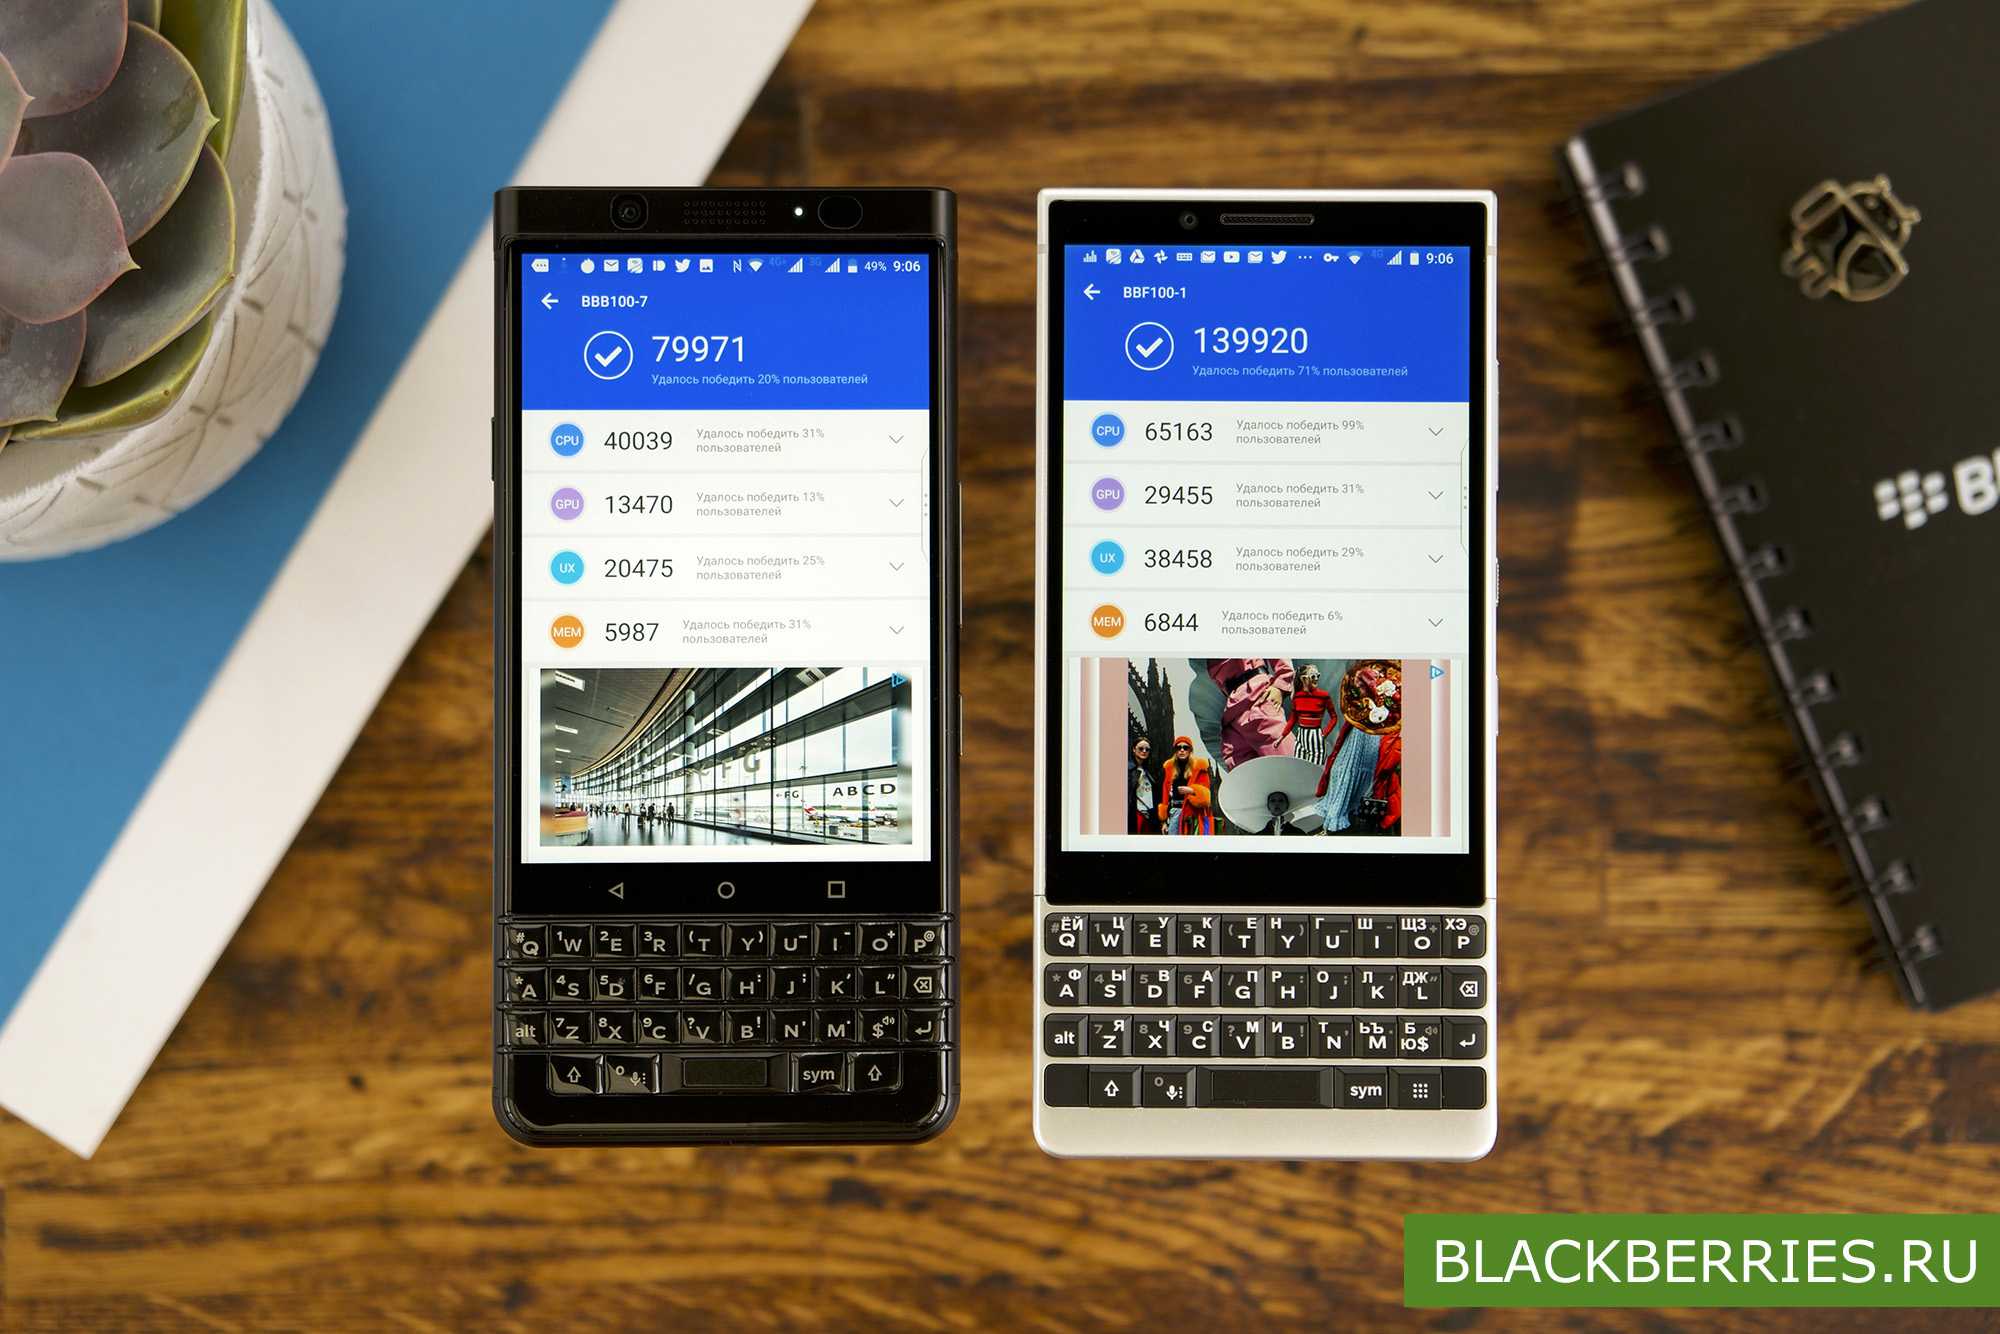 Blackberry keyone – обзор смартфона с удобной и функциональной клавиатурой